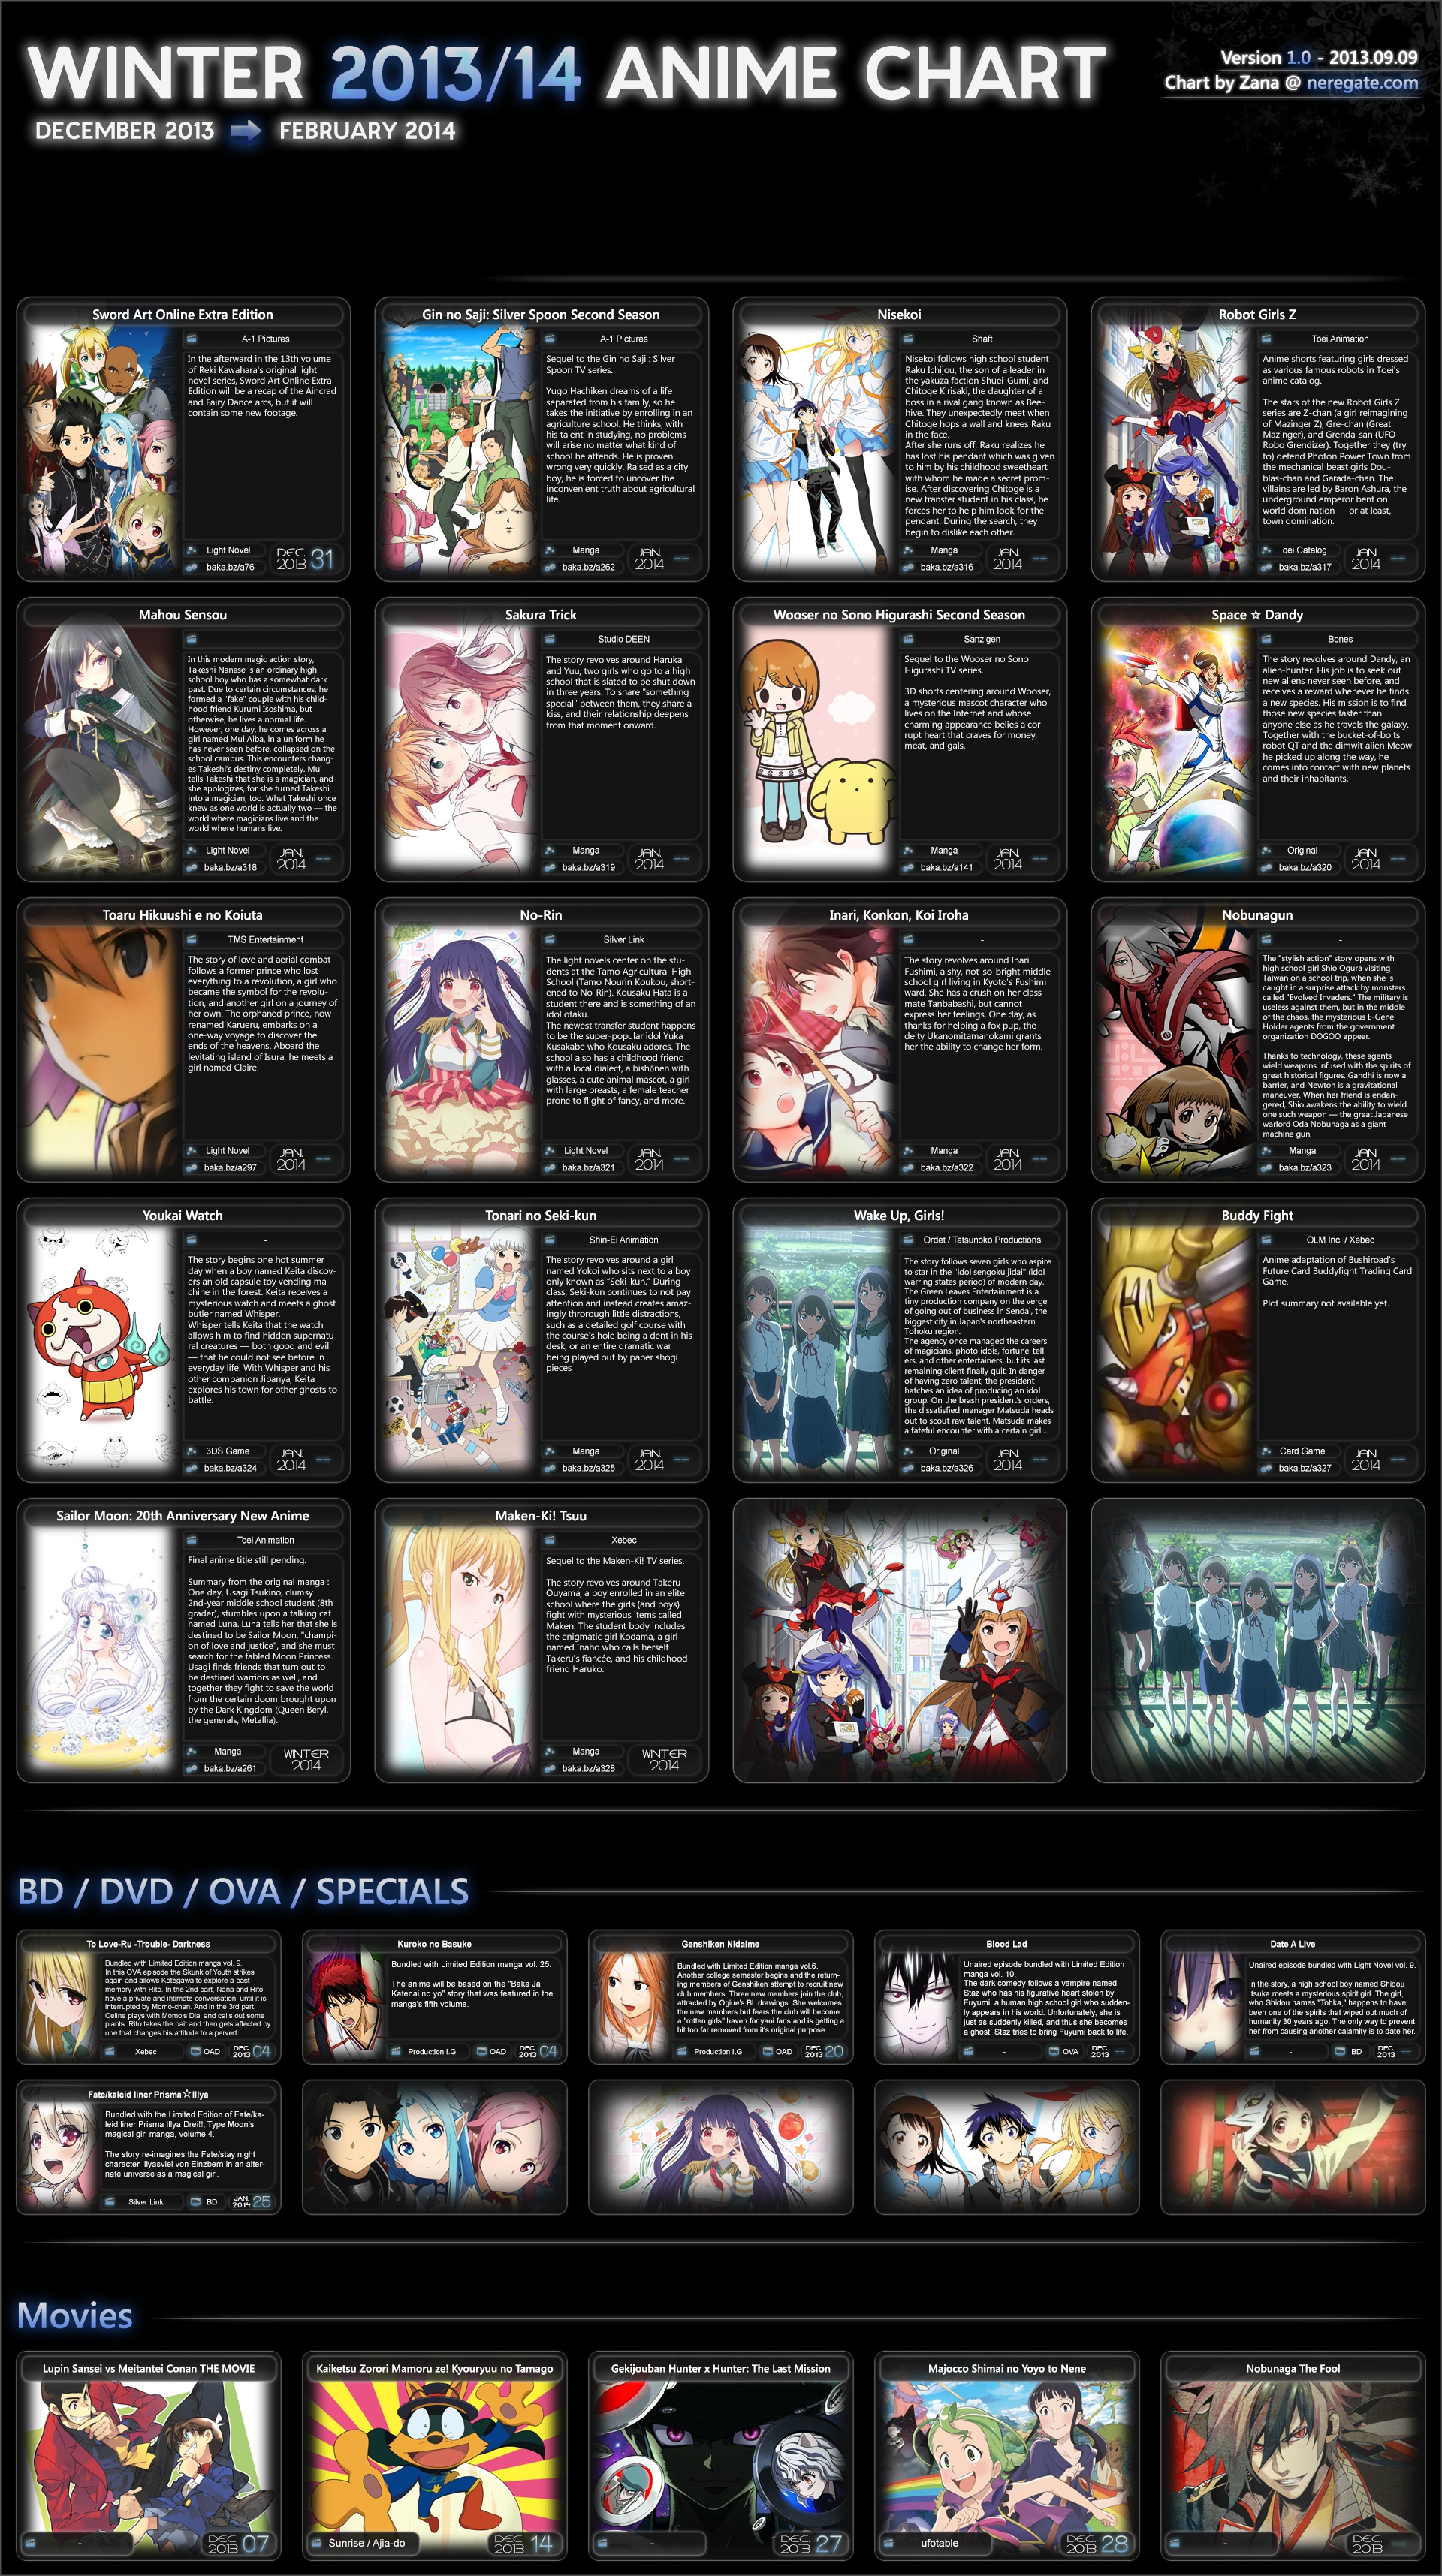 Calendário bonito 2013 das meninas do anime